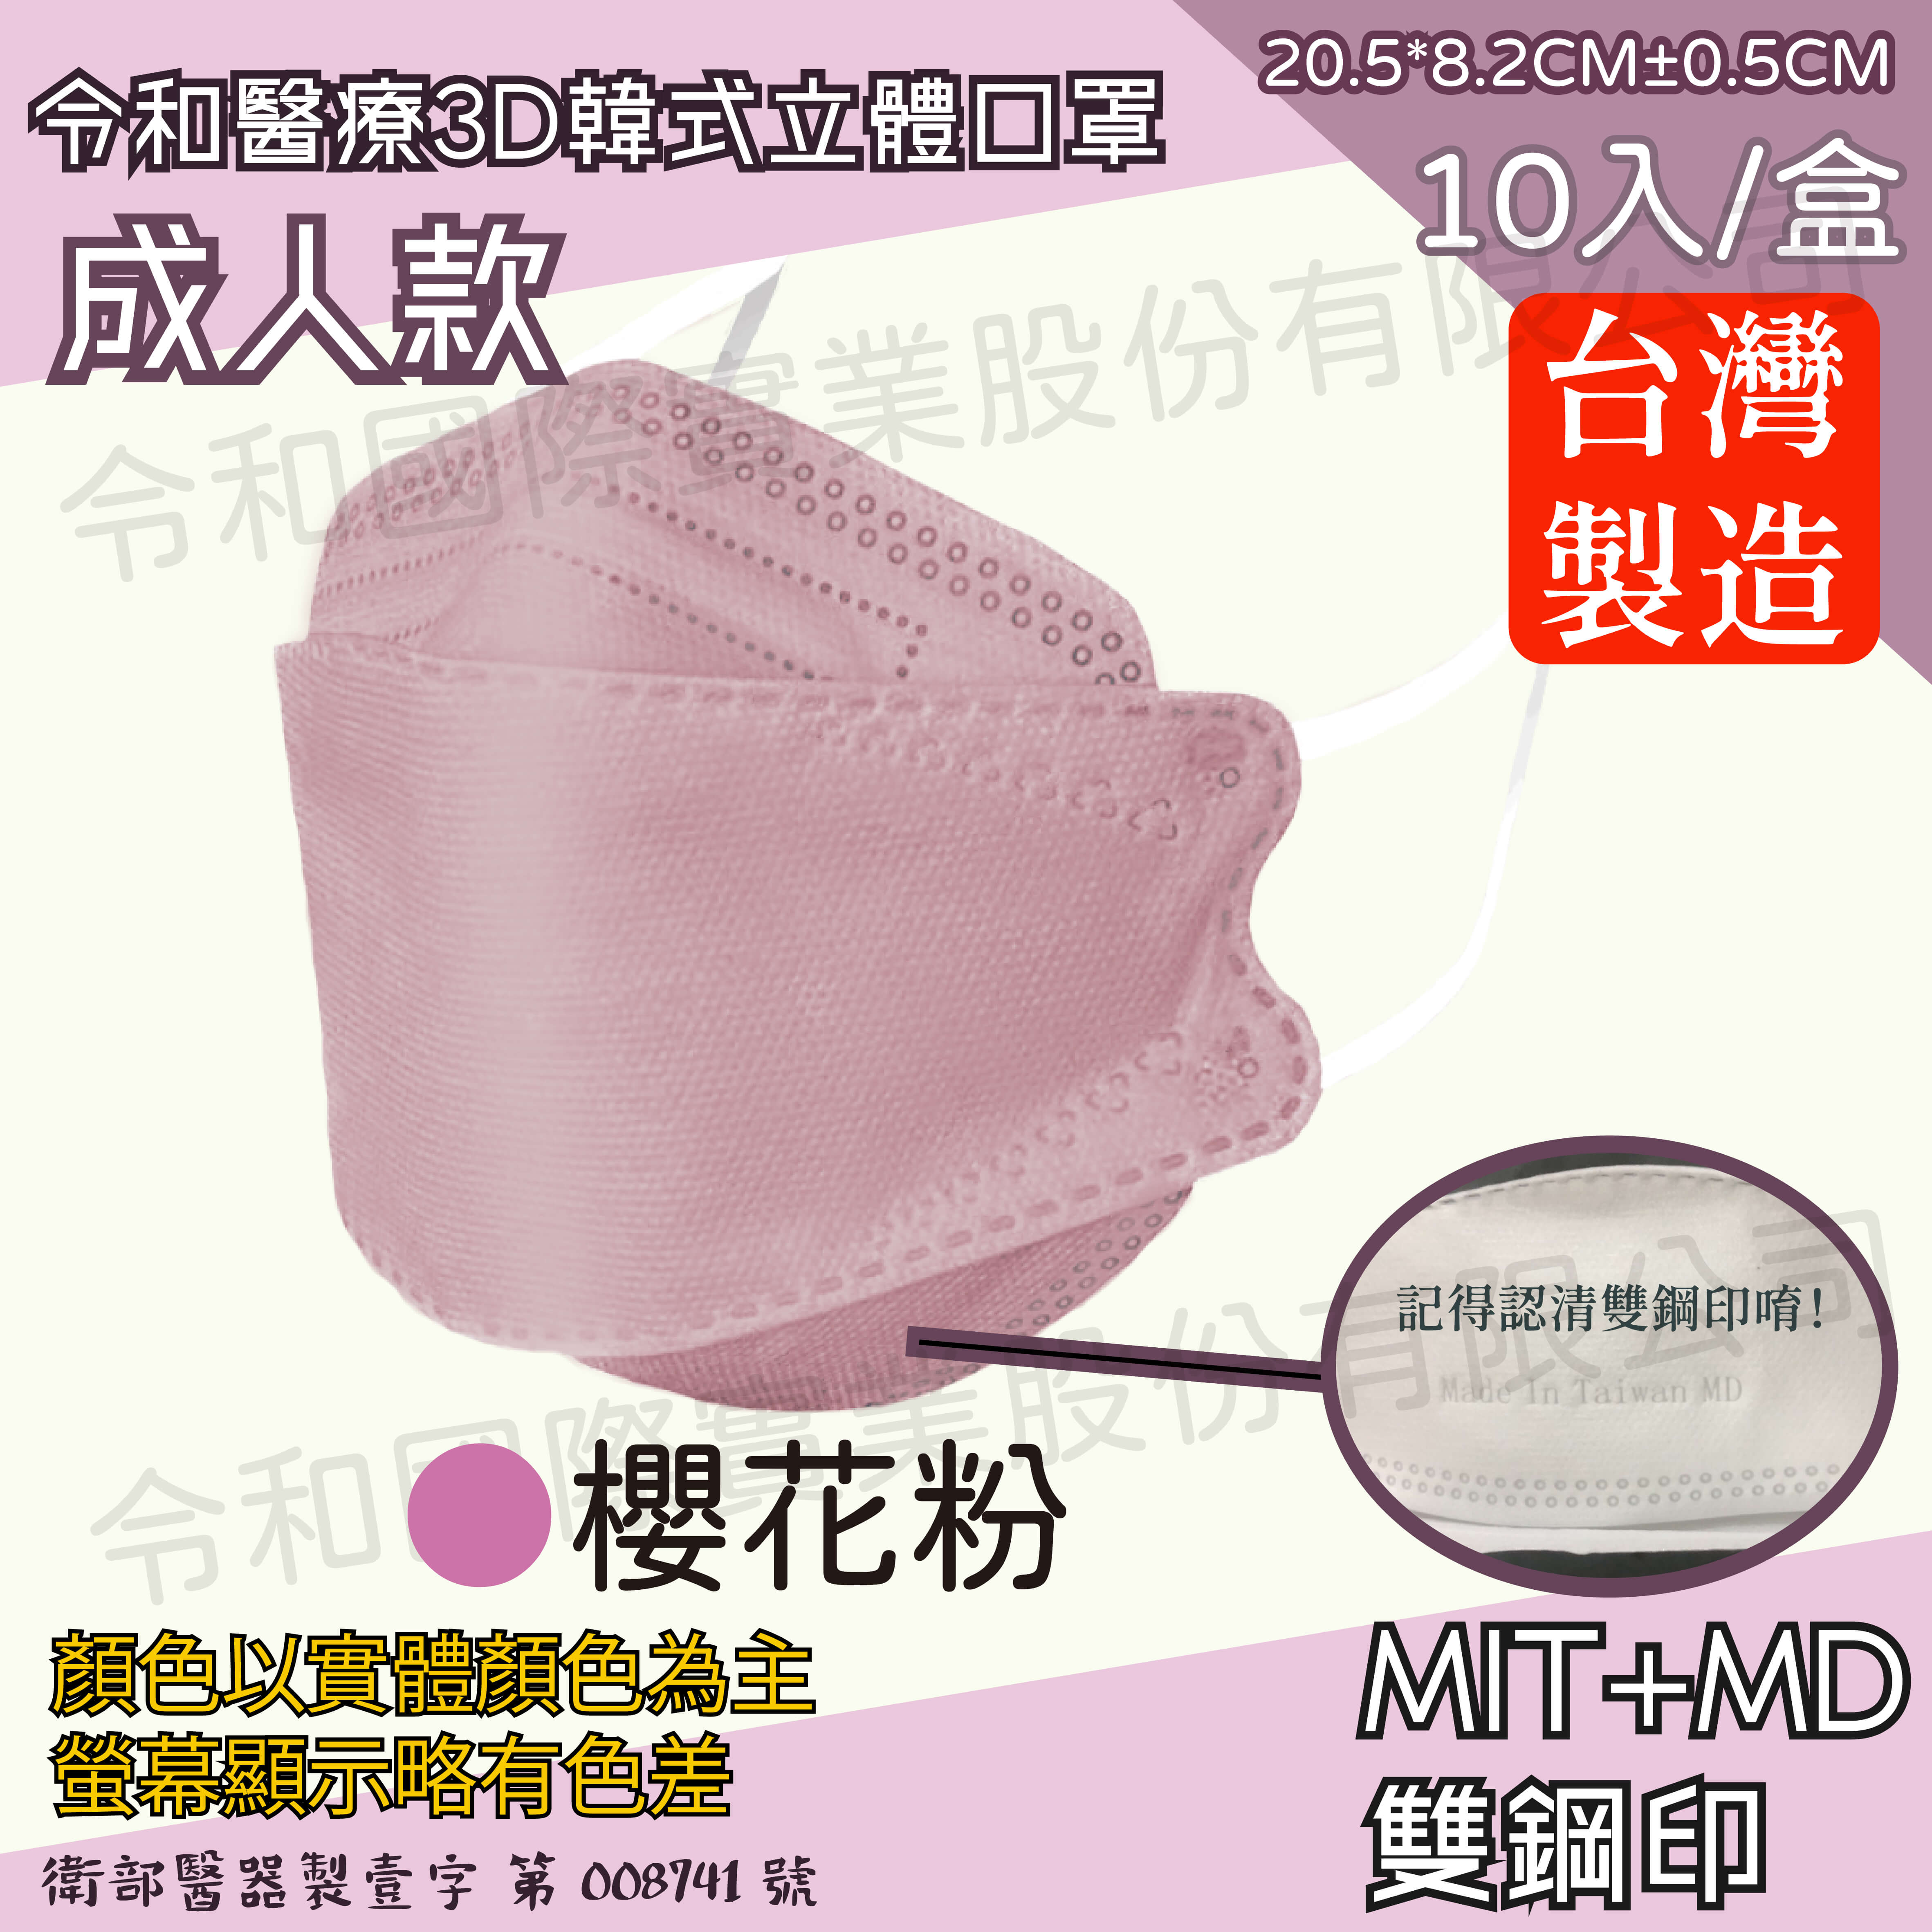 【成人3D現貨快出】令和醫療KF94韓式立體口罩 櫻花粉 一盒10入